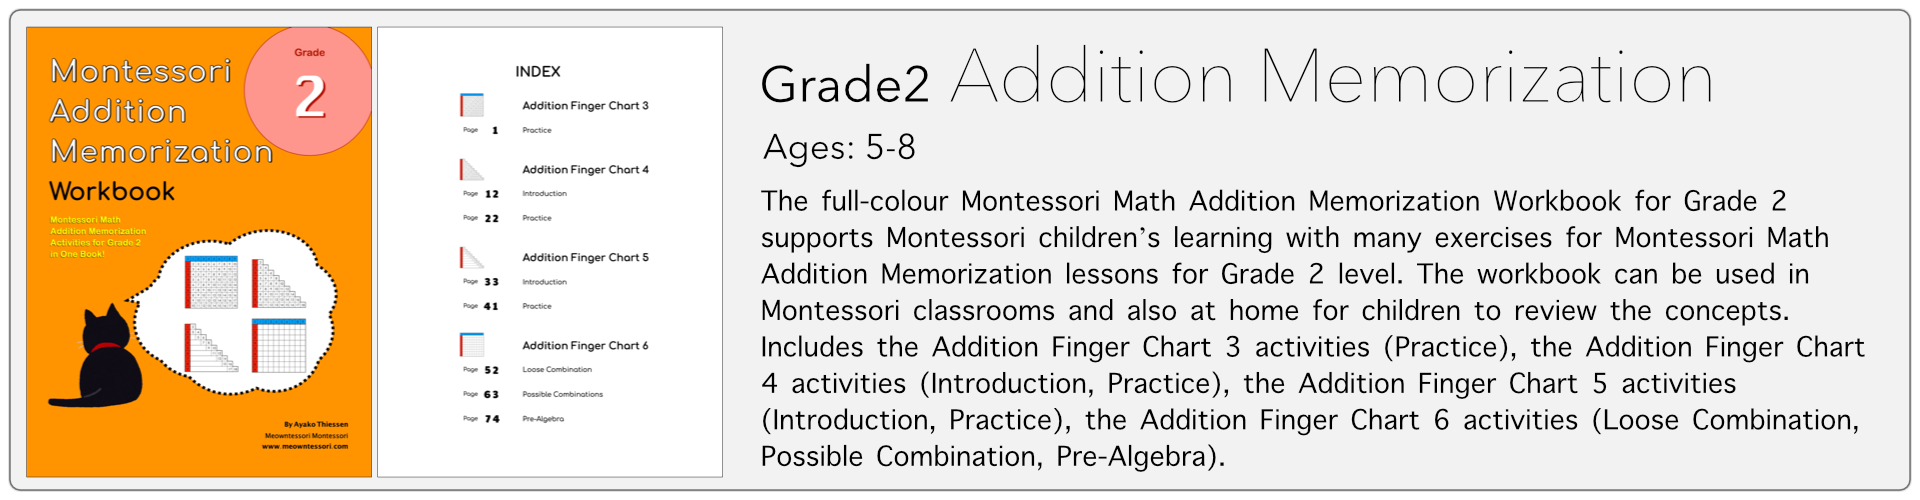 grade2 addition memorization